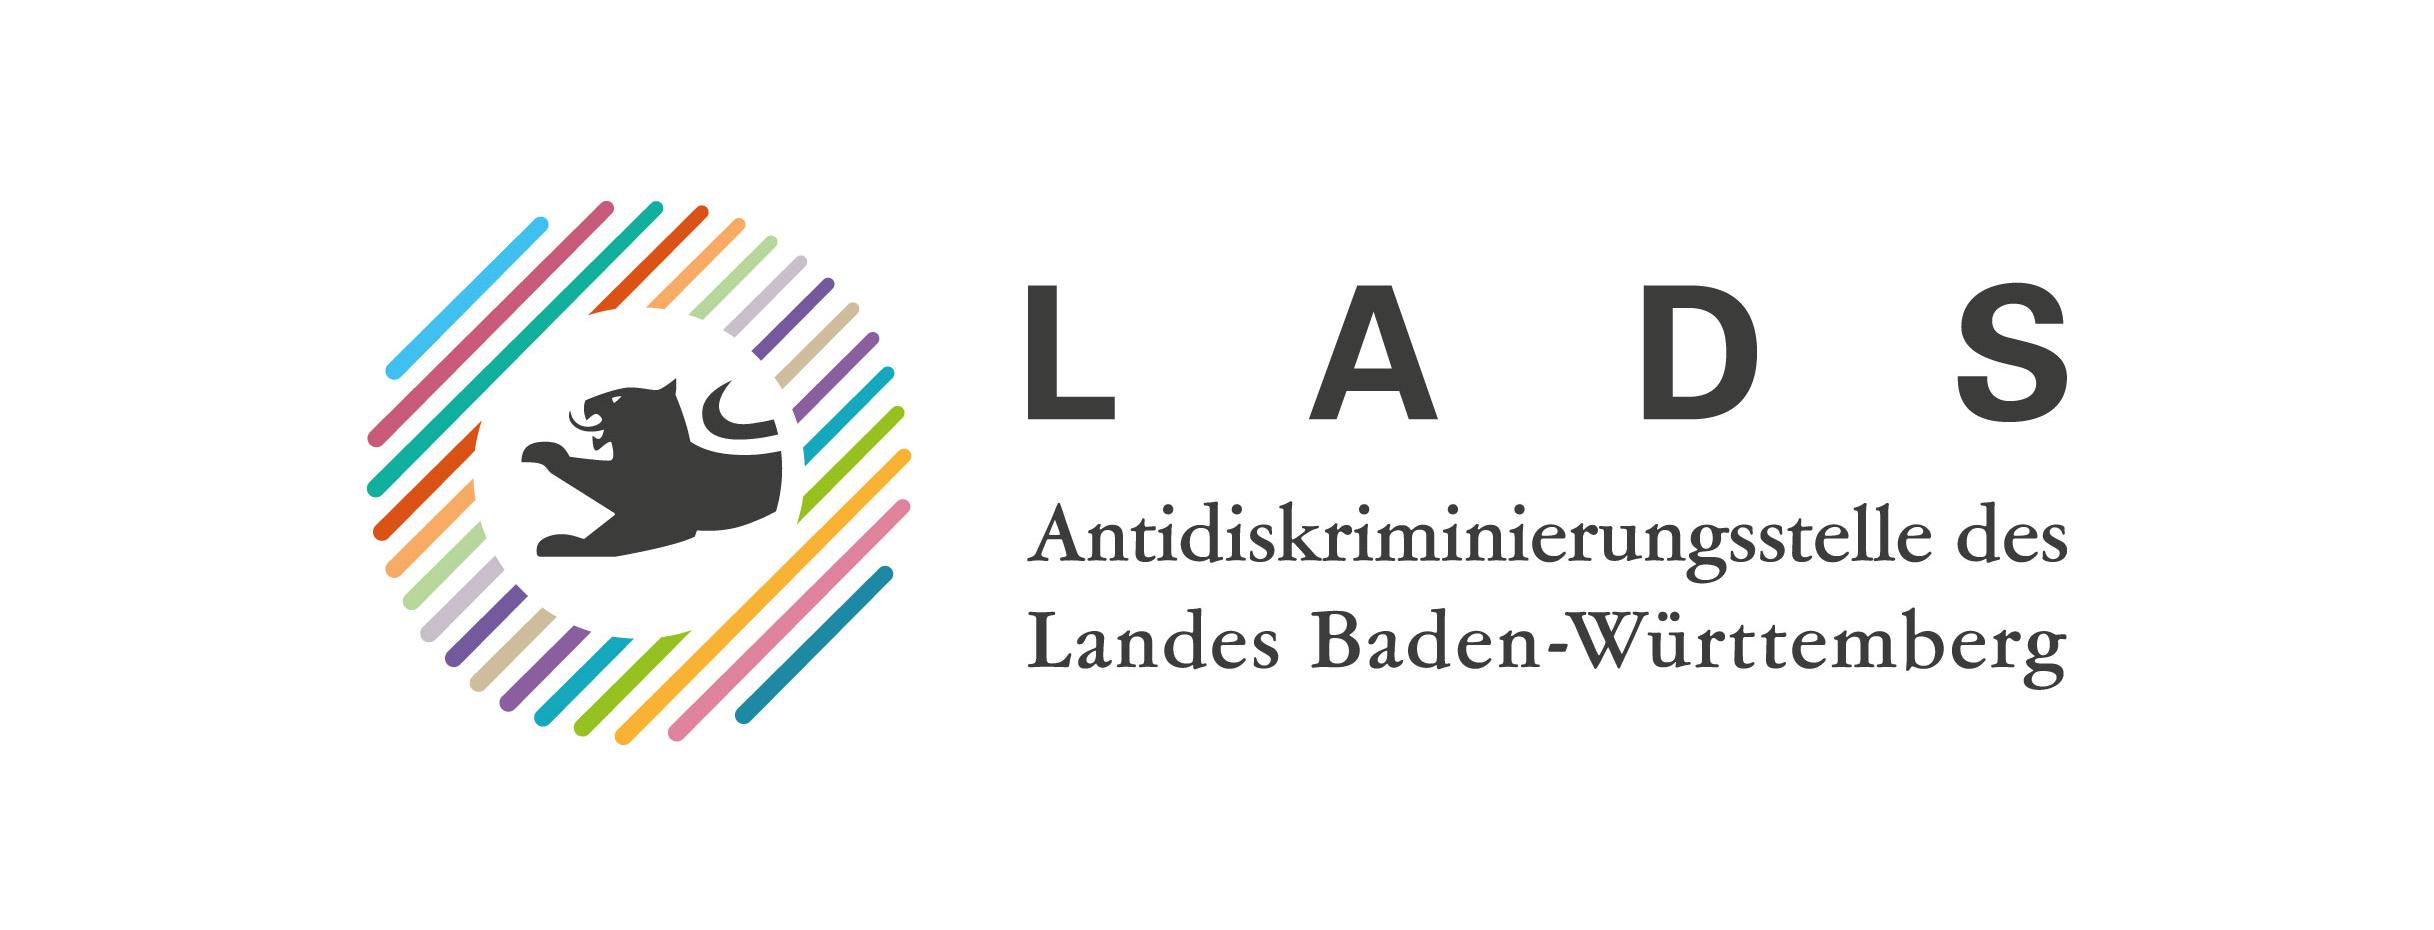 Grafik eines Löwen in einem Kreis aus bunten Strichen - Antidiskriminierungsstelle des Landes Baden-Württemberg (LADS)